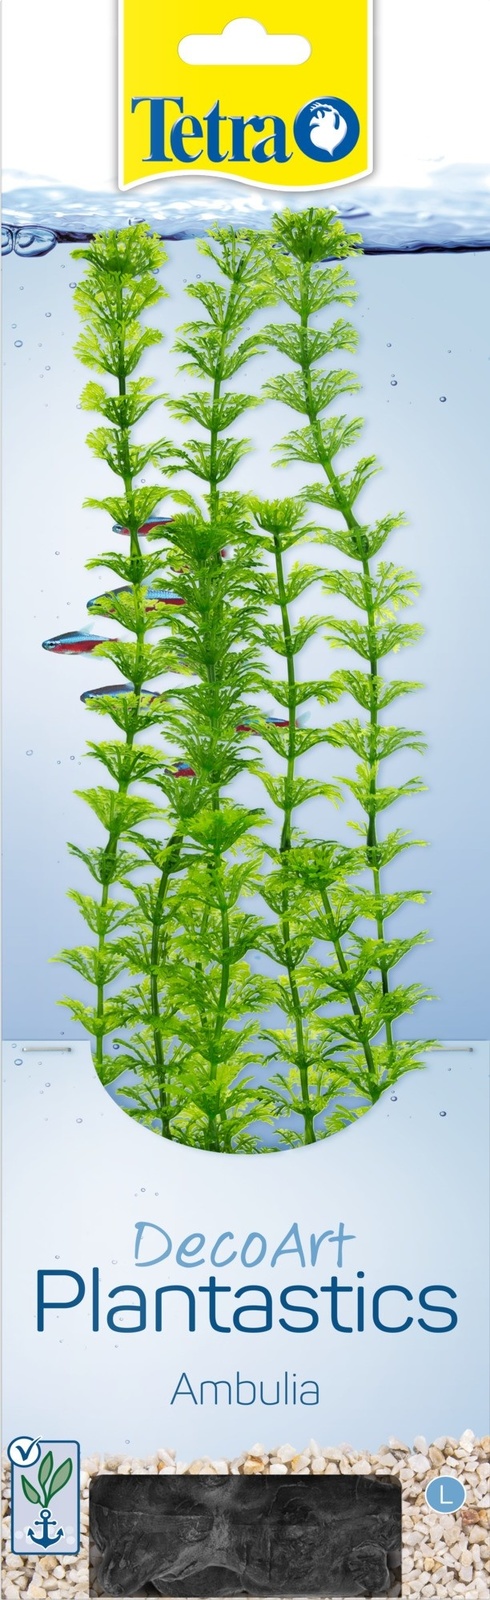 Tetra (оборудование) Tetra (оборудование) растение DecoArt Plantastics Ambulia 30 см (115 г)